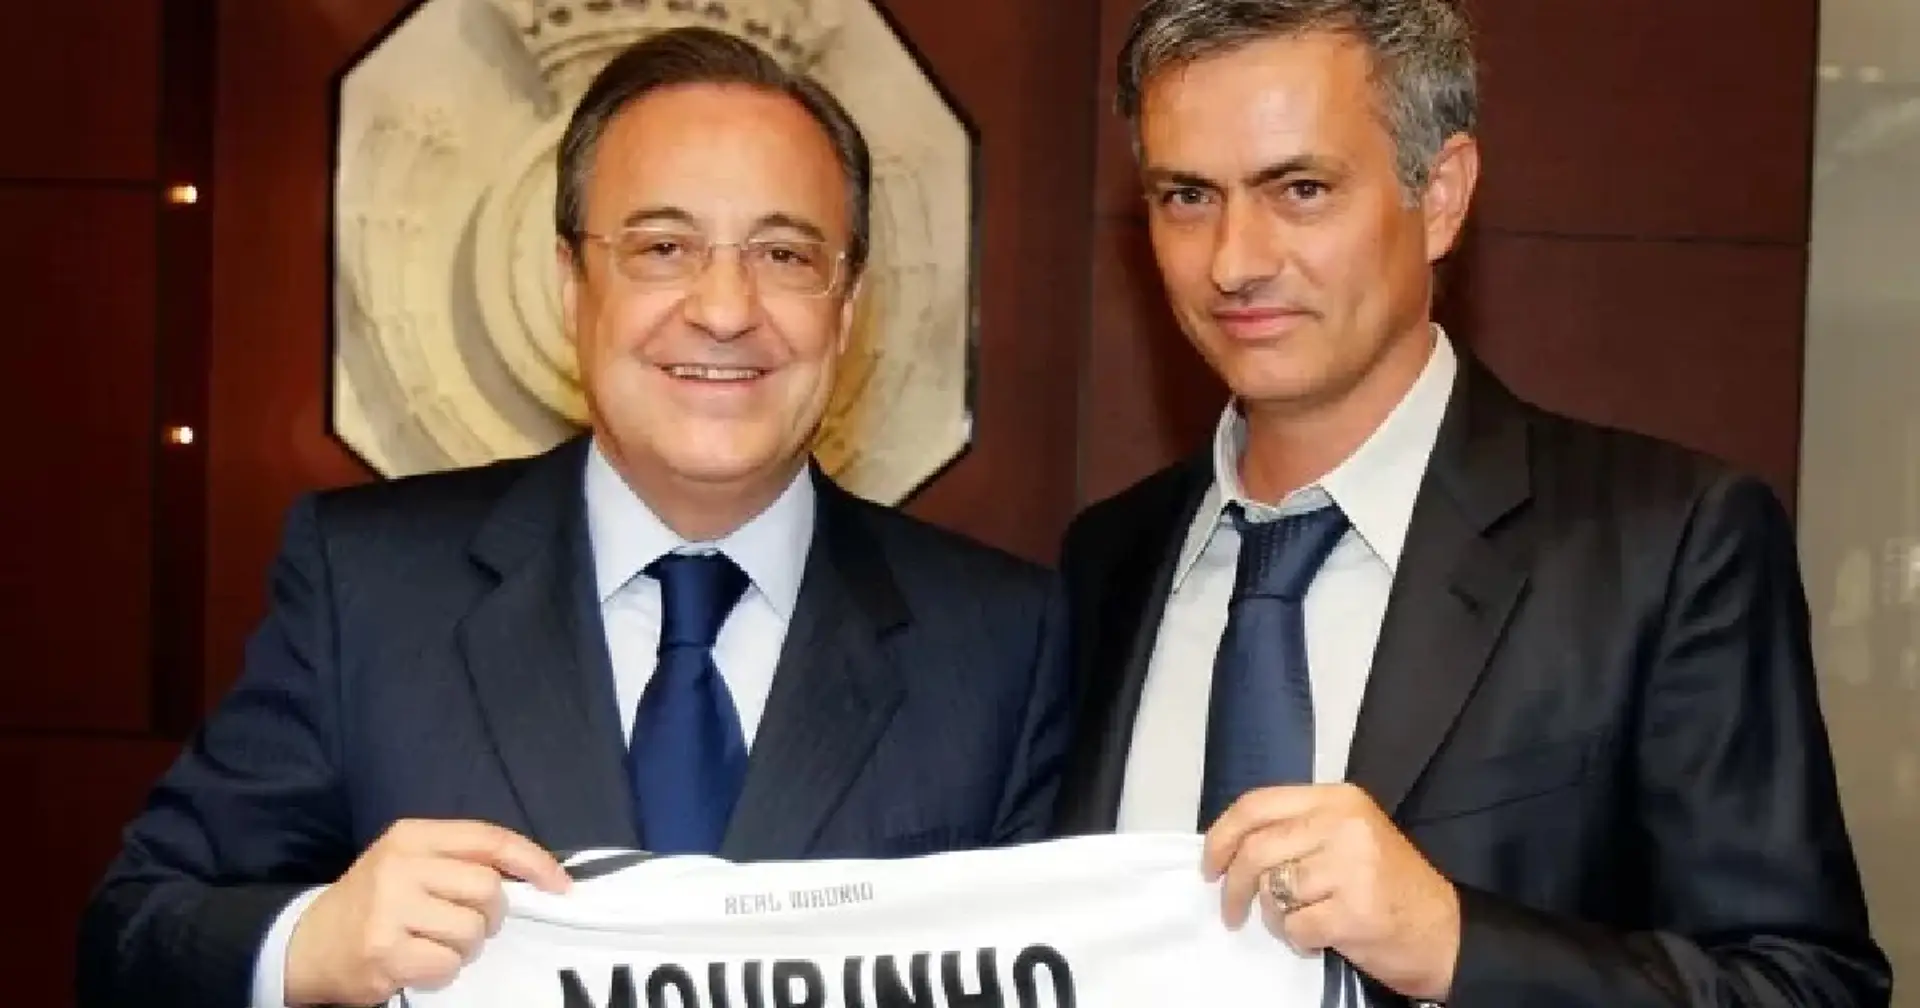 'Soy madridista': Mourinho reacciona ante el posible regreso al Real Madrid como sucesor de Ancelotti